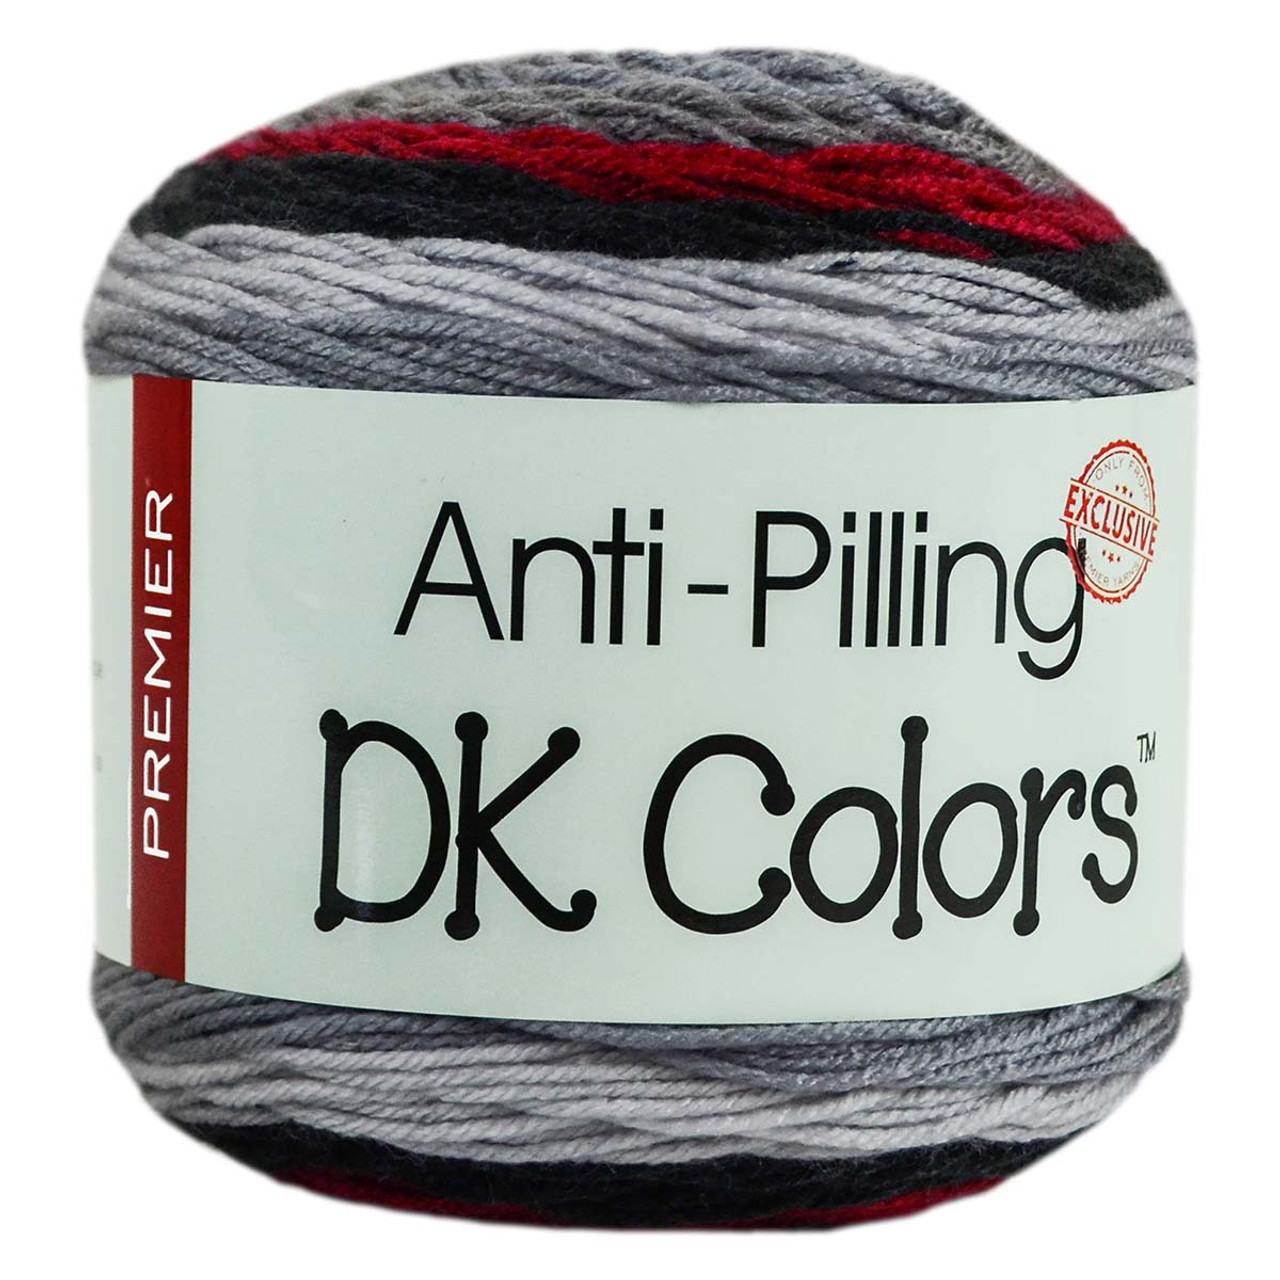 Premier DK Colors Yarn